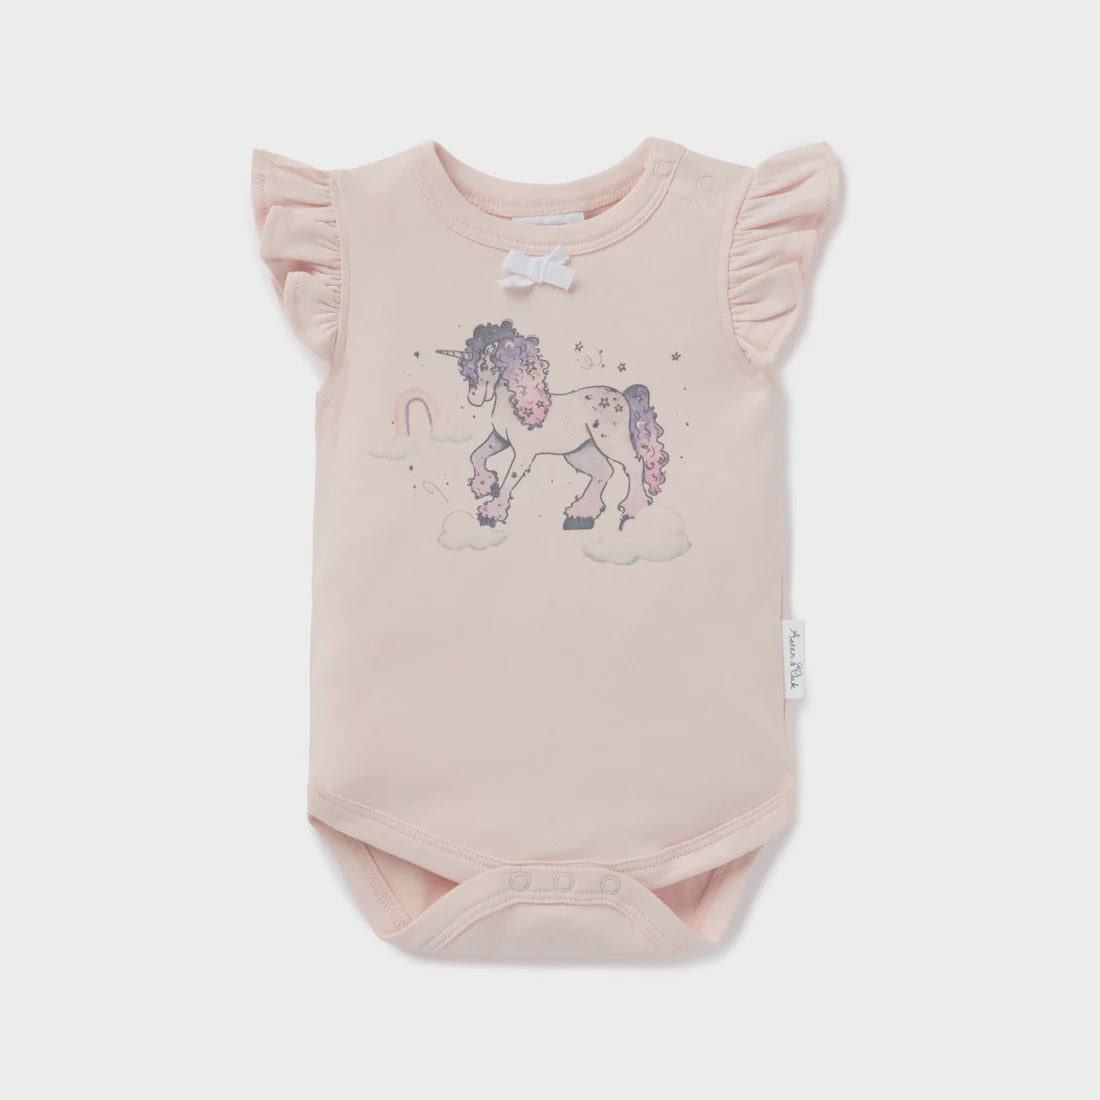 Unicorn Print Flutter Onesie - Baby Clothes